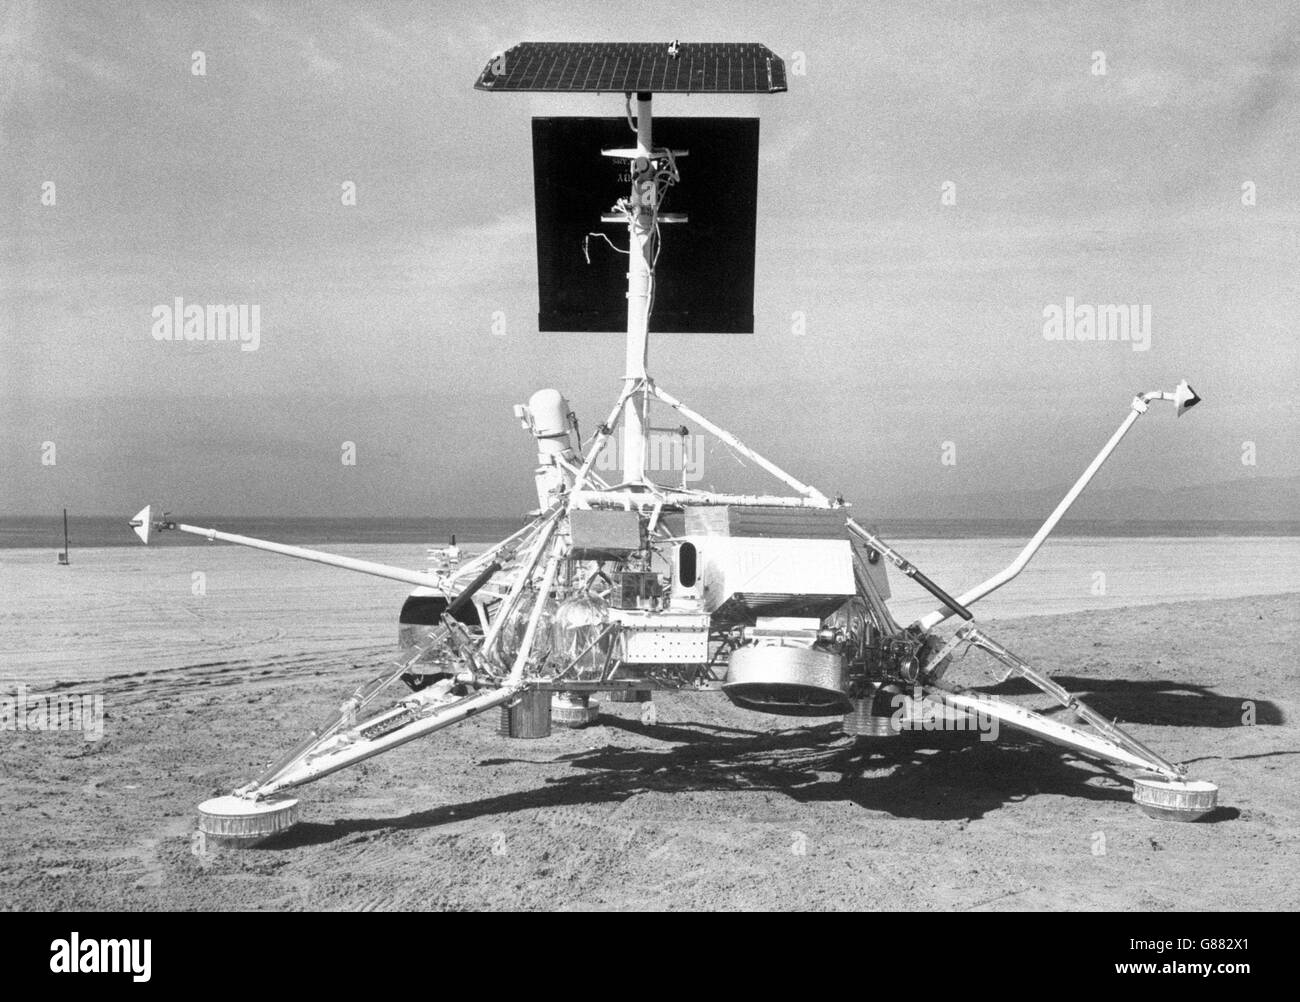 Una nave espacial Surveyor, la contraparte exacta de una programada para ser lanzada el 30th de mayo en el intento de aterrizaje suave de América en la Luna. Está representado cerca de Hughes Aircraft Company, Culver City, California, que diseñó y construyó los vehículos para el Laboratorio de Propulsión a Chorro de la NASA. Foto de stock